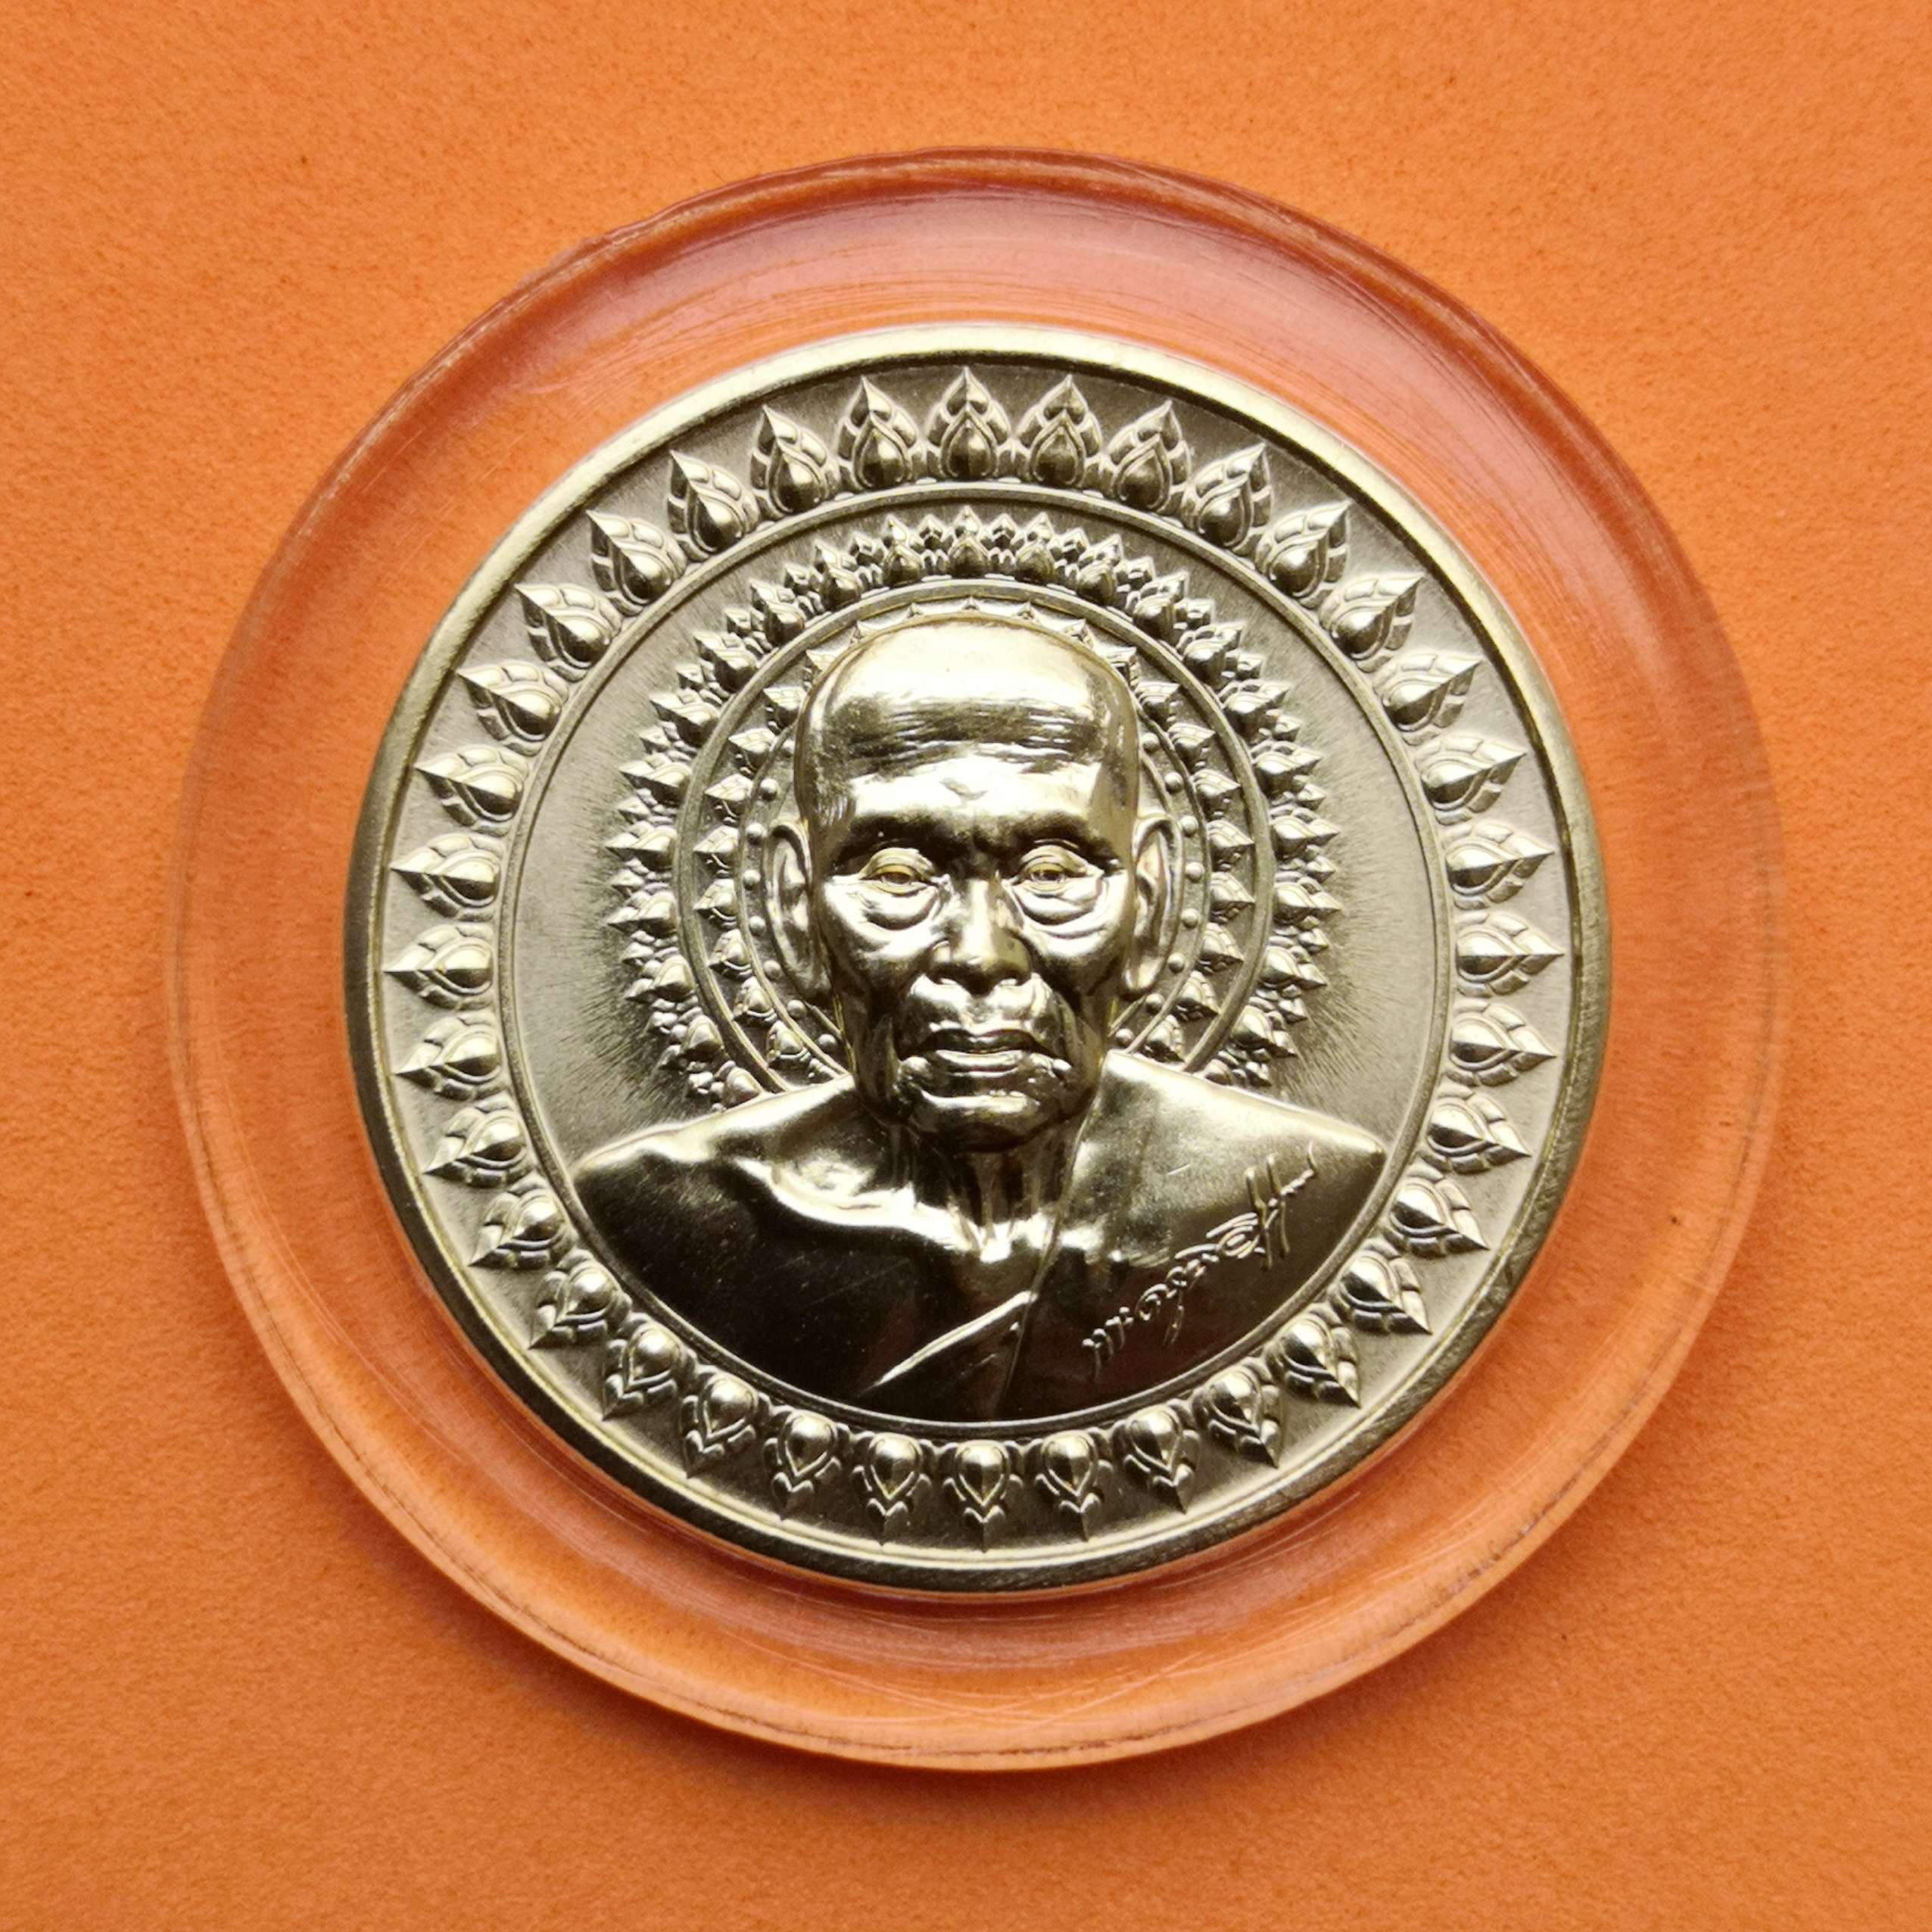 เหรียญหลวงพ่อพัฒน์ ปุญญากาโม วัดห้วยด้วน รุ่นอริยทรัพย์ 99 เนื้อทองเหลือง ขนาด 3 เซน บล็อกกษาปณ์ (ของสะสม ของที่ระลึก วัตถุมงคล